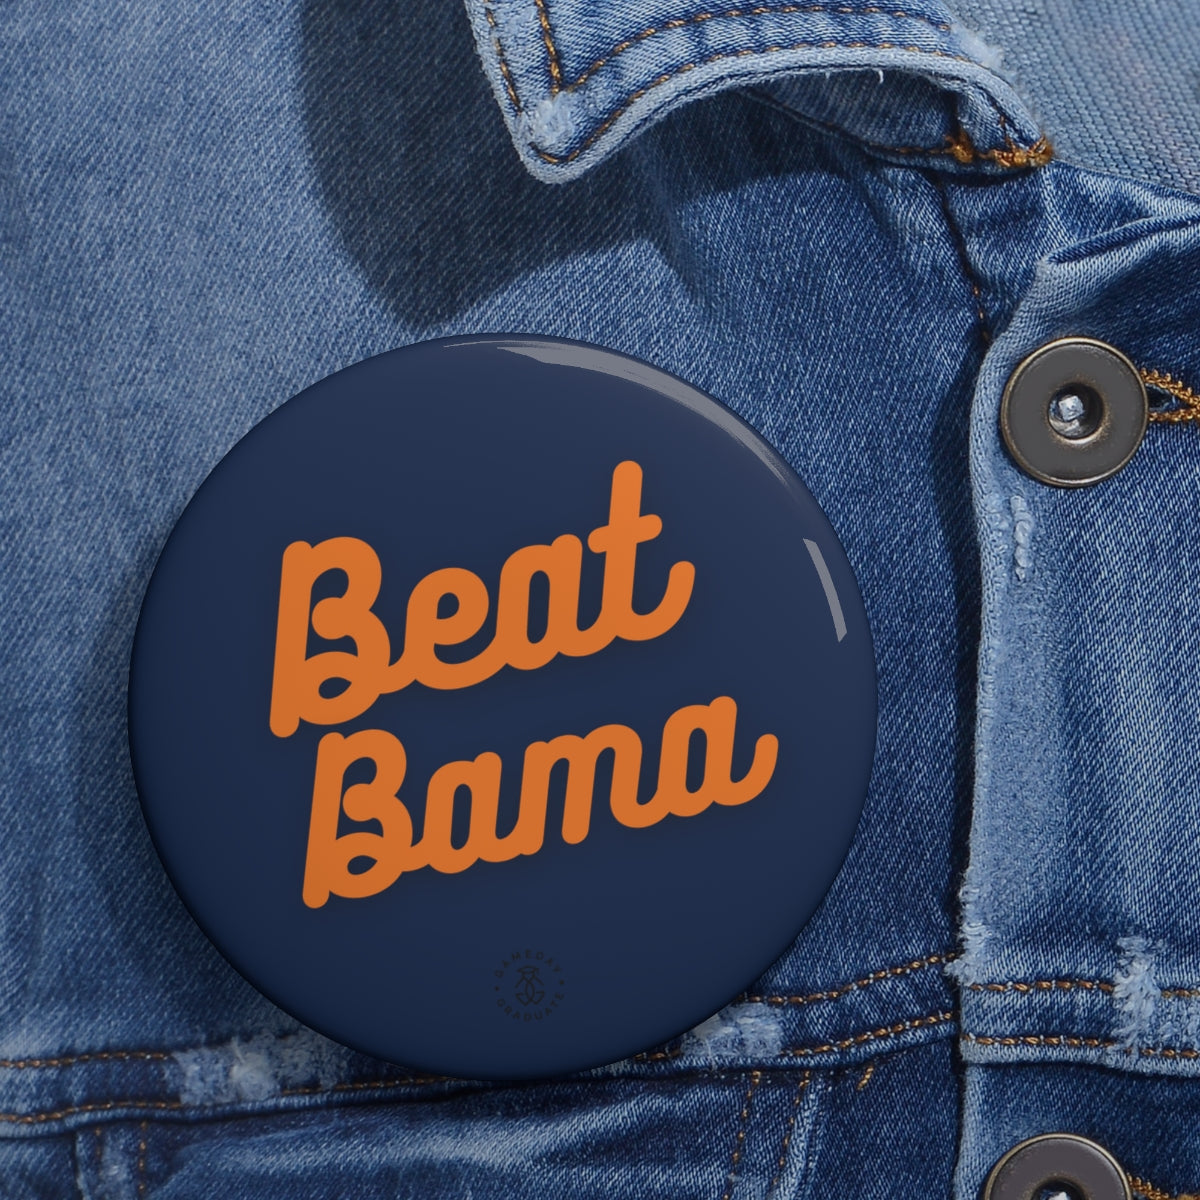 Auburn Beat Bama Button